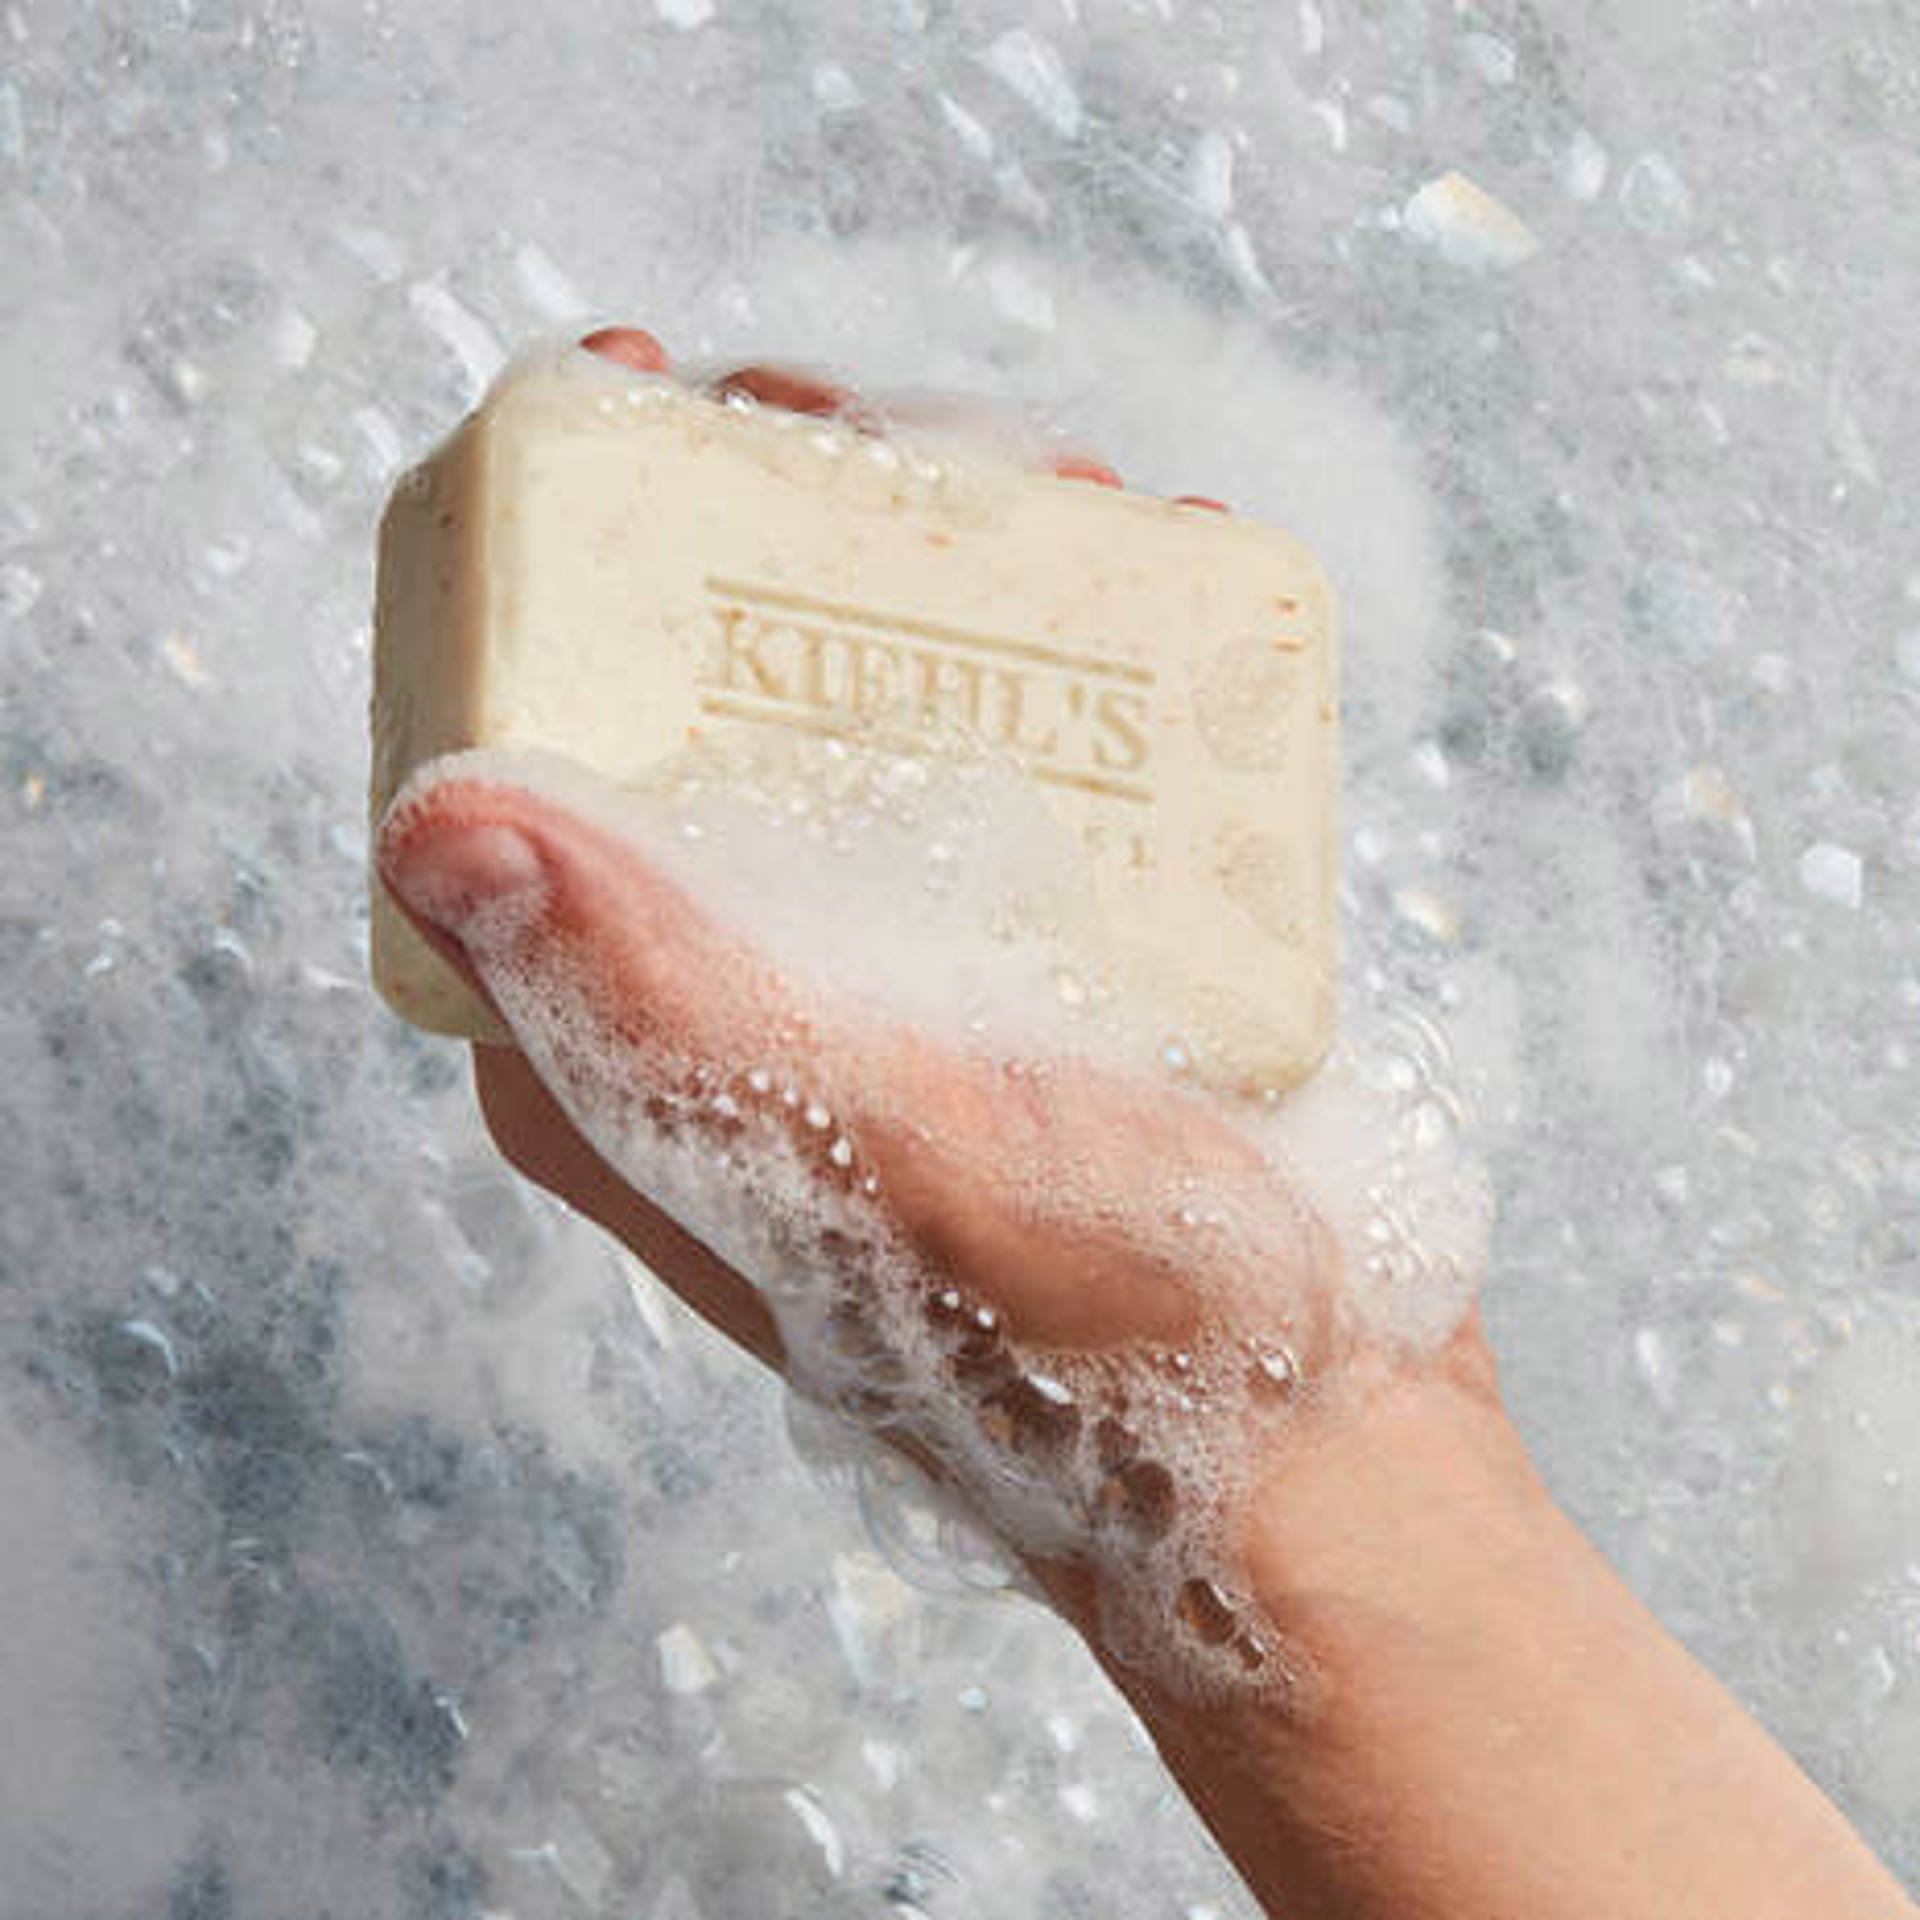 Kiehl's Exfoliating Body Soap